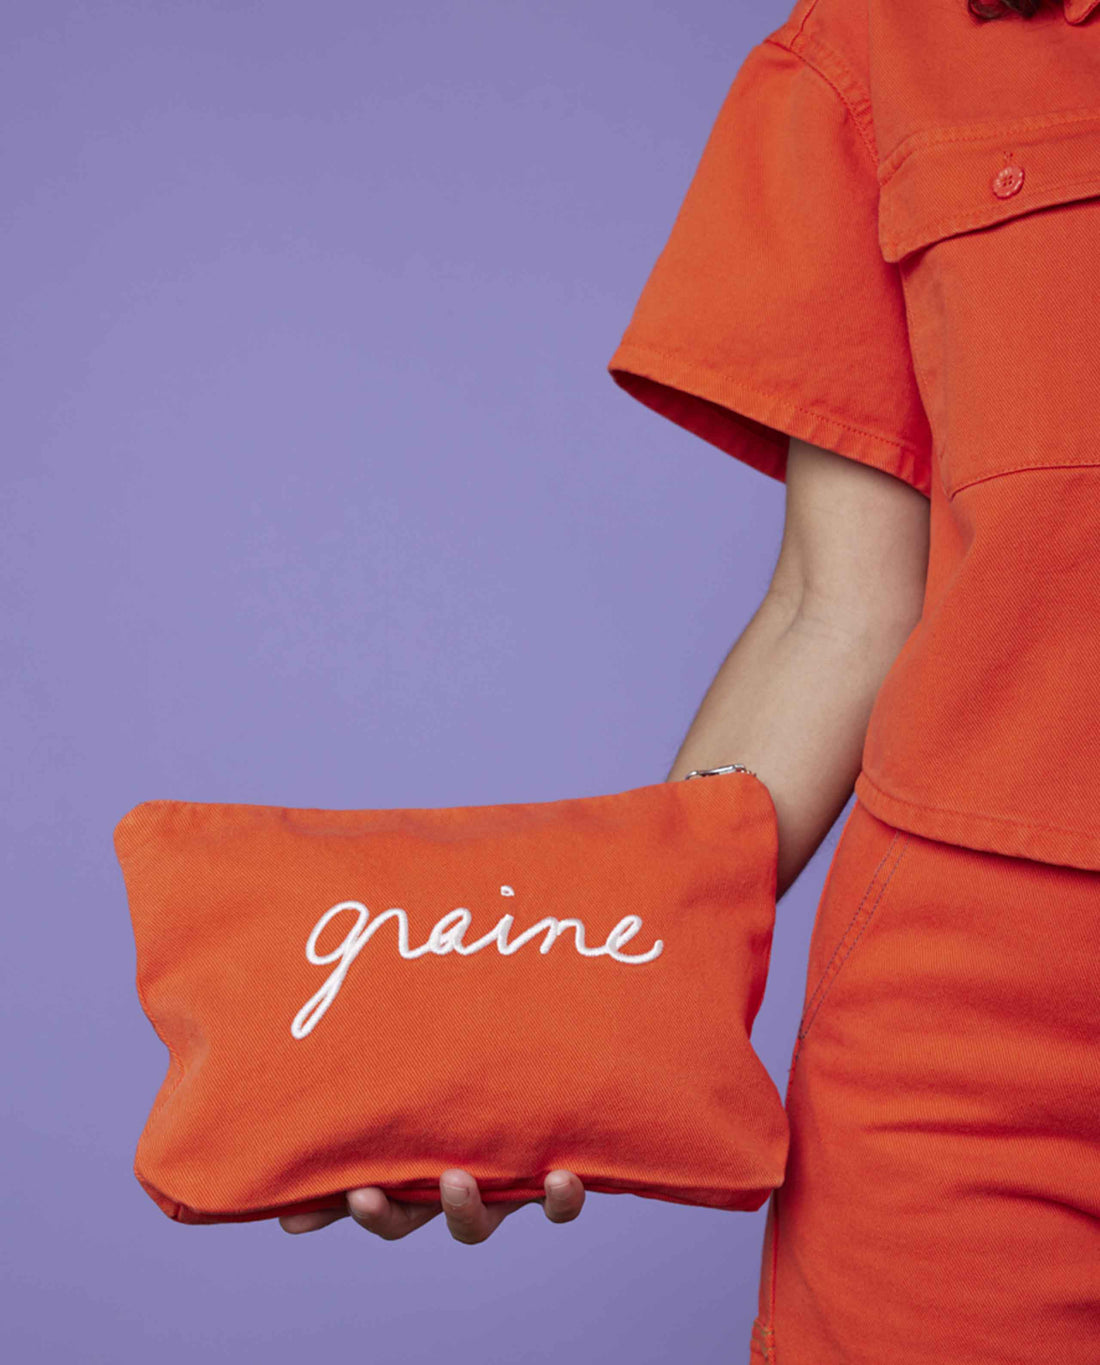 Marché Commun pochette en coton bio orange graine clothing